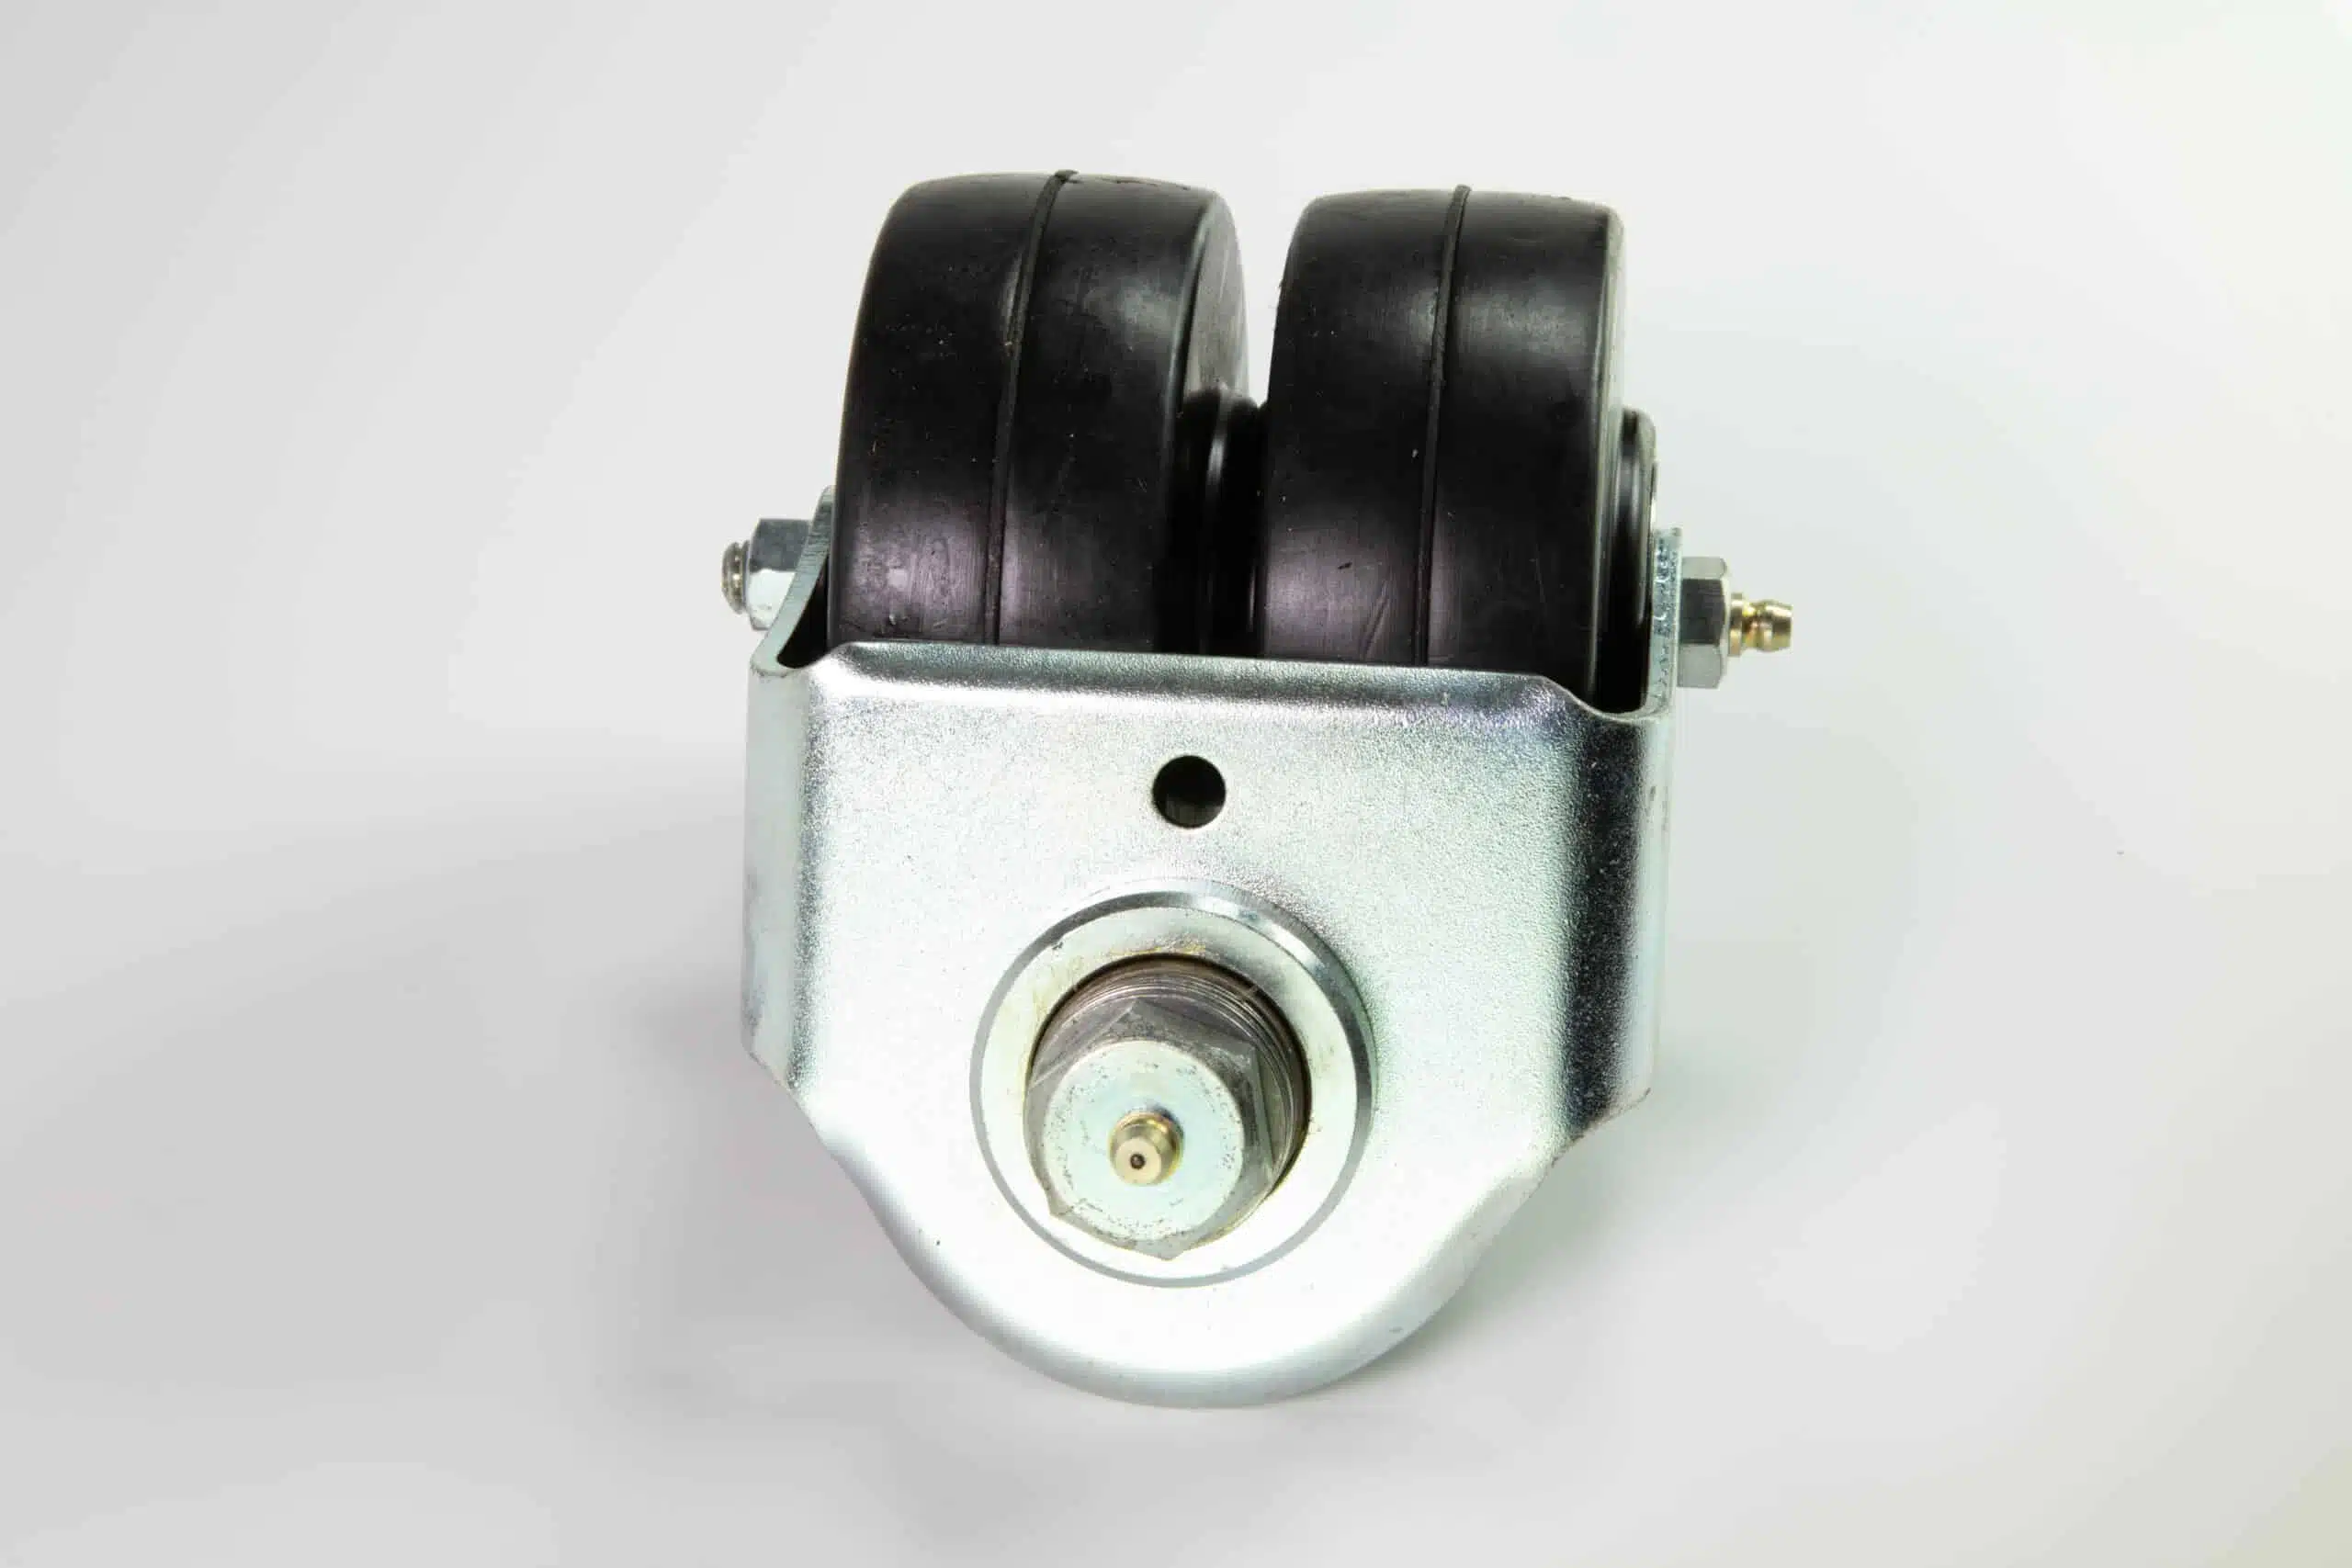 Tru Cut Double Wheel Caster Assembly – T57138 Reel Rollers